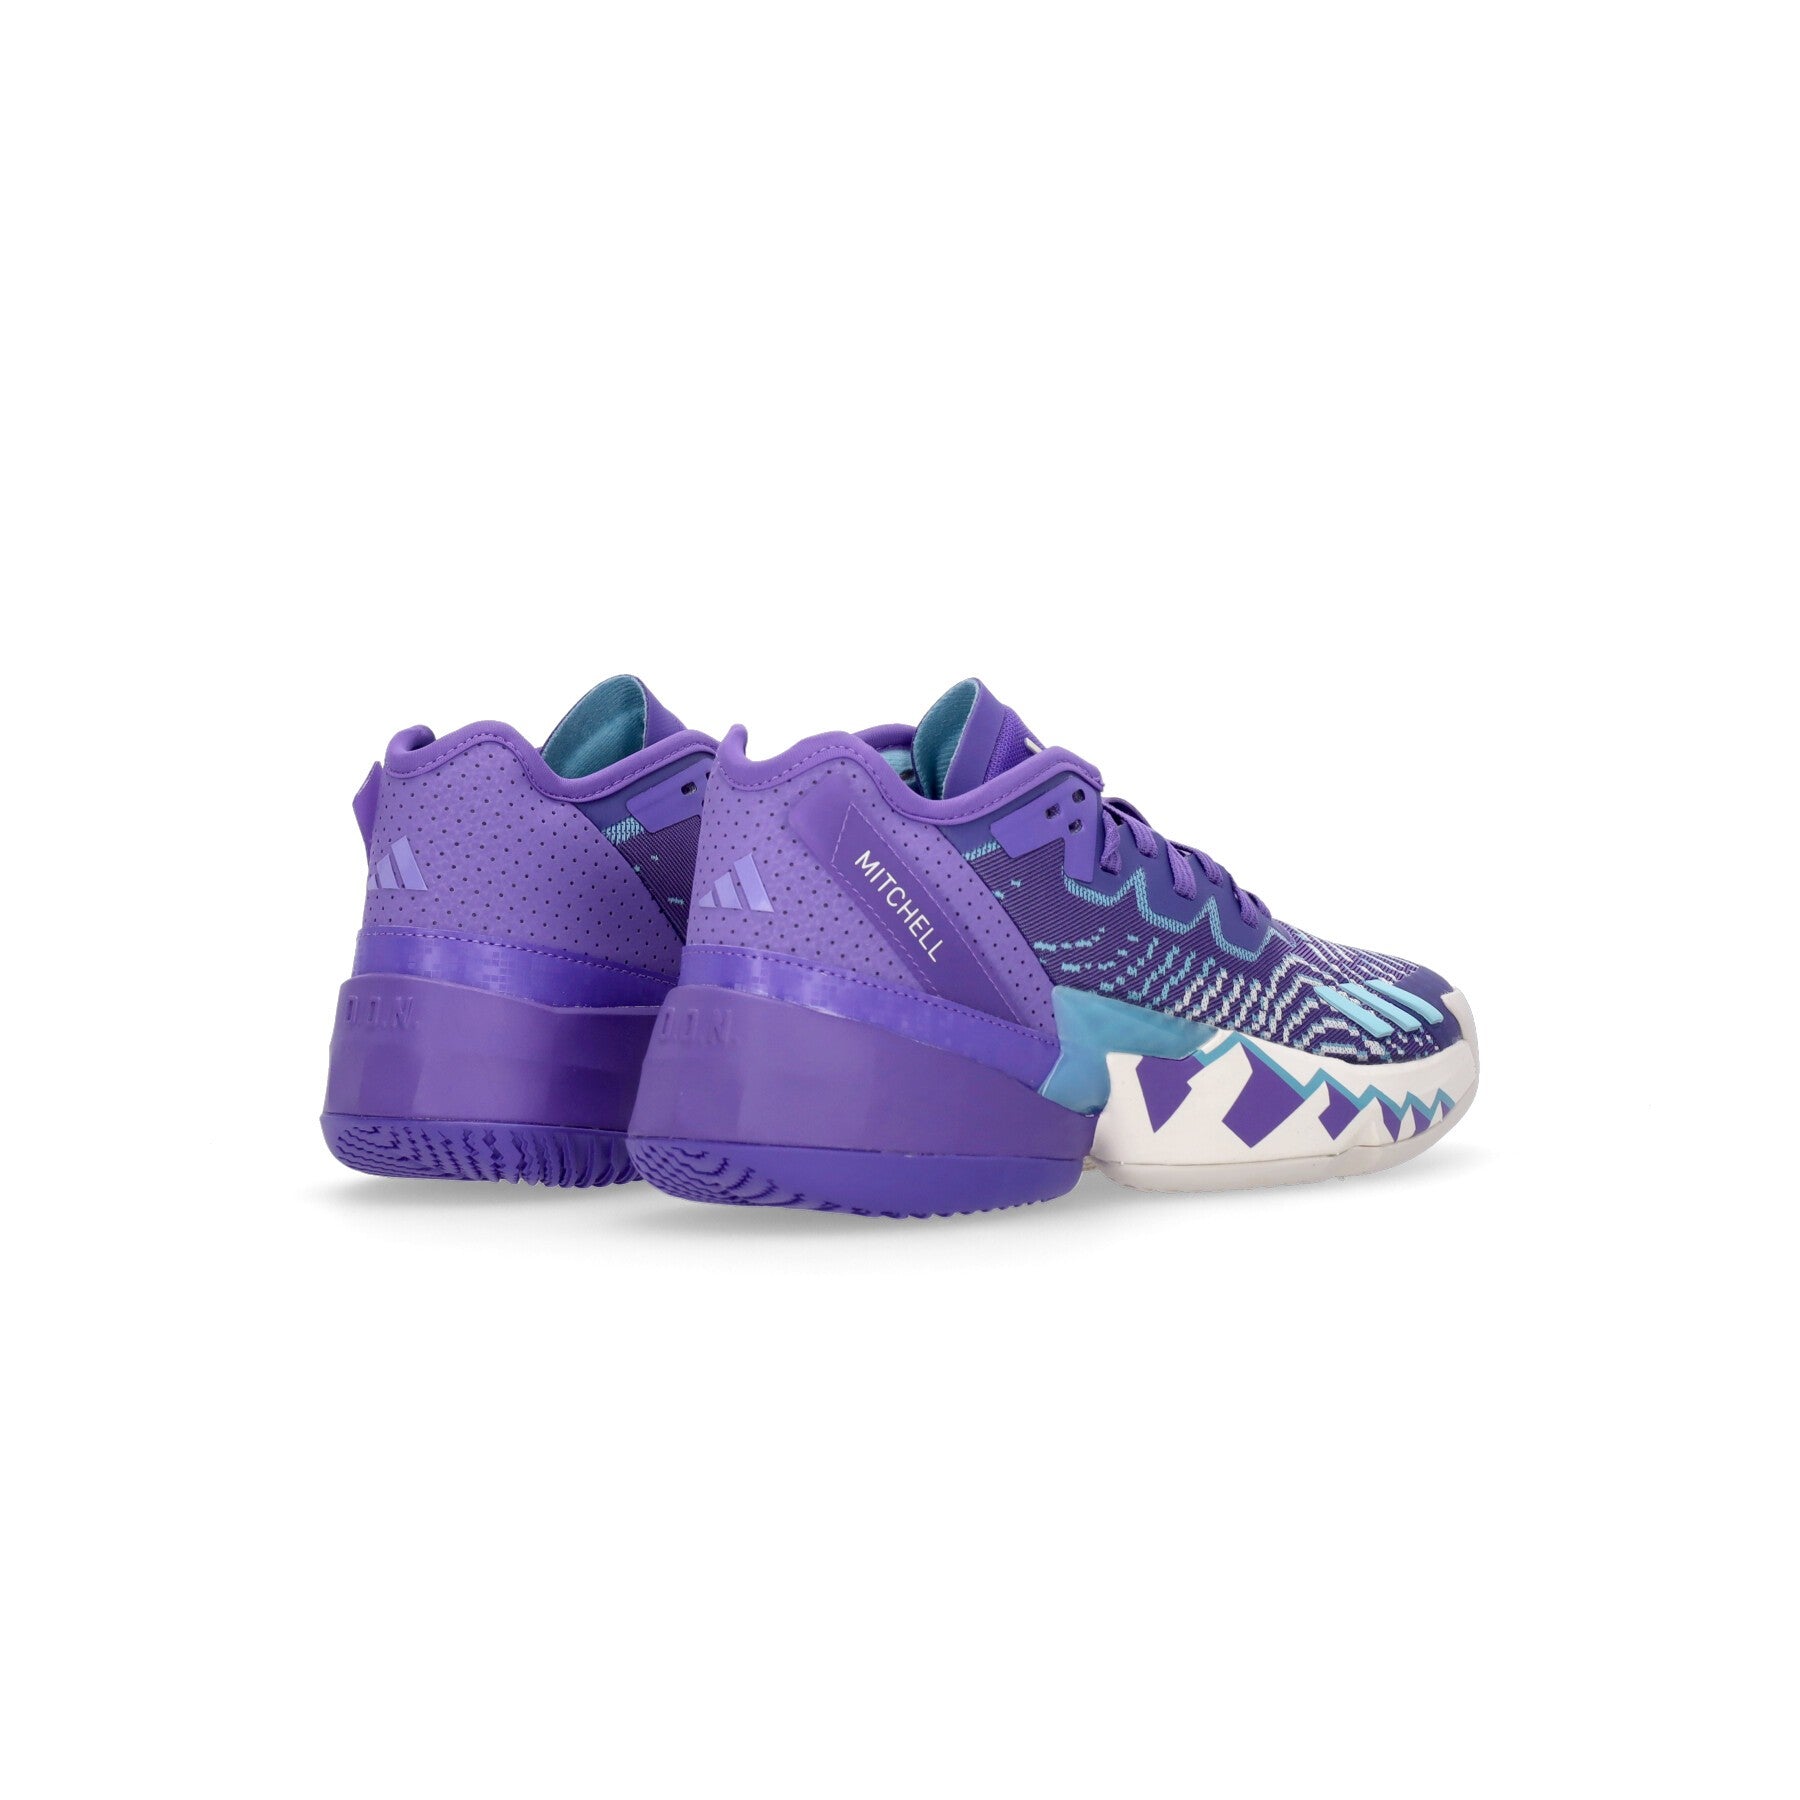 Adidas, Scarpa Basket Uomo D.o.n. Issue 4, 